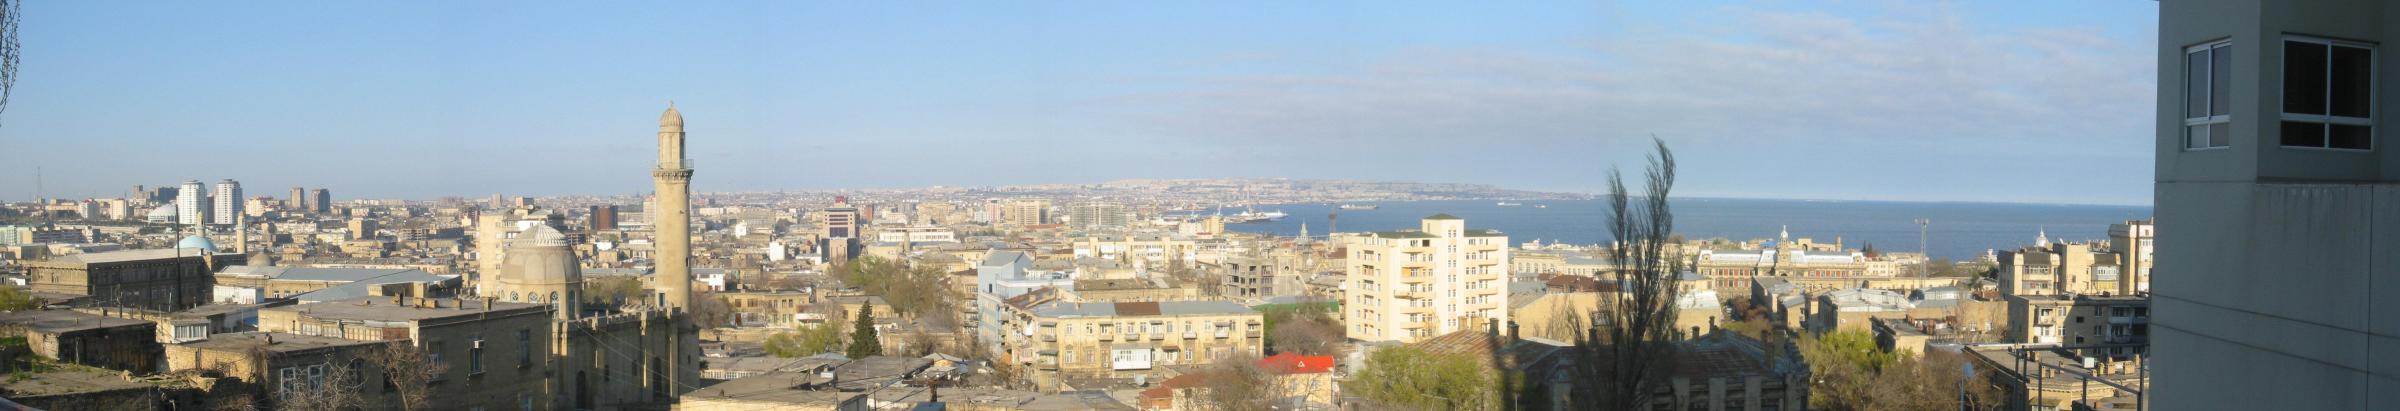 Azerbaijan-Baku-wsmlukin